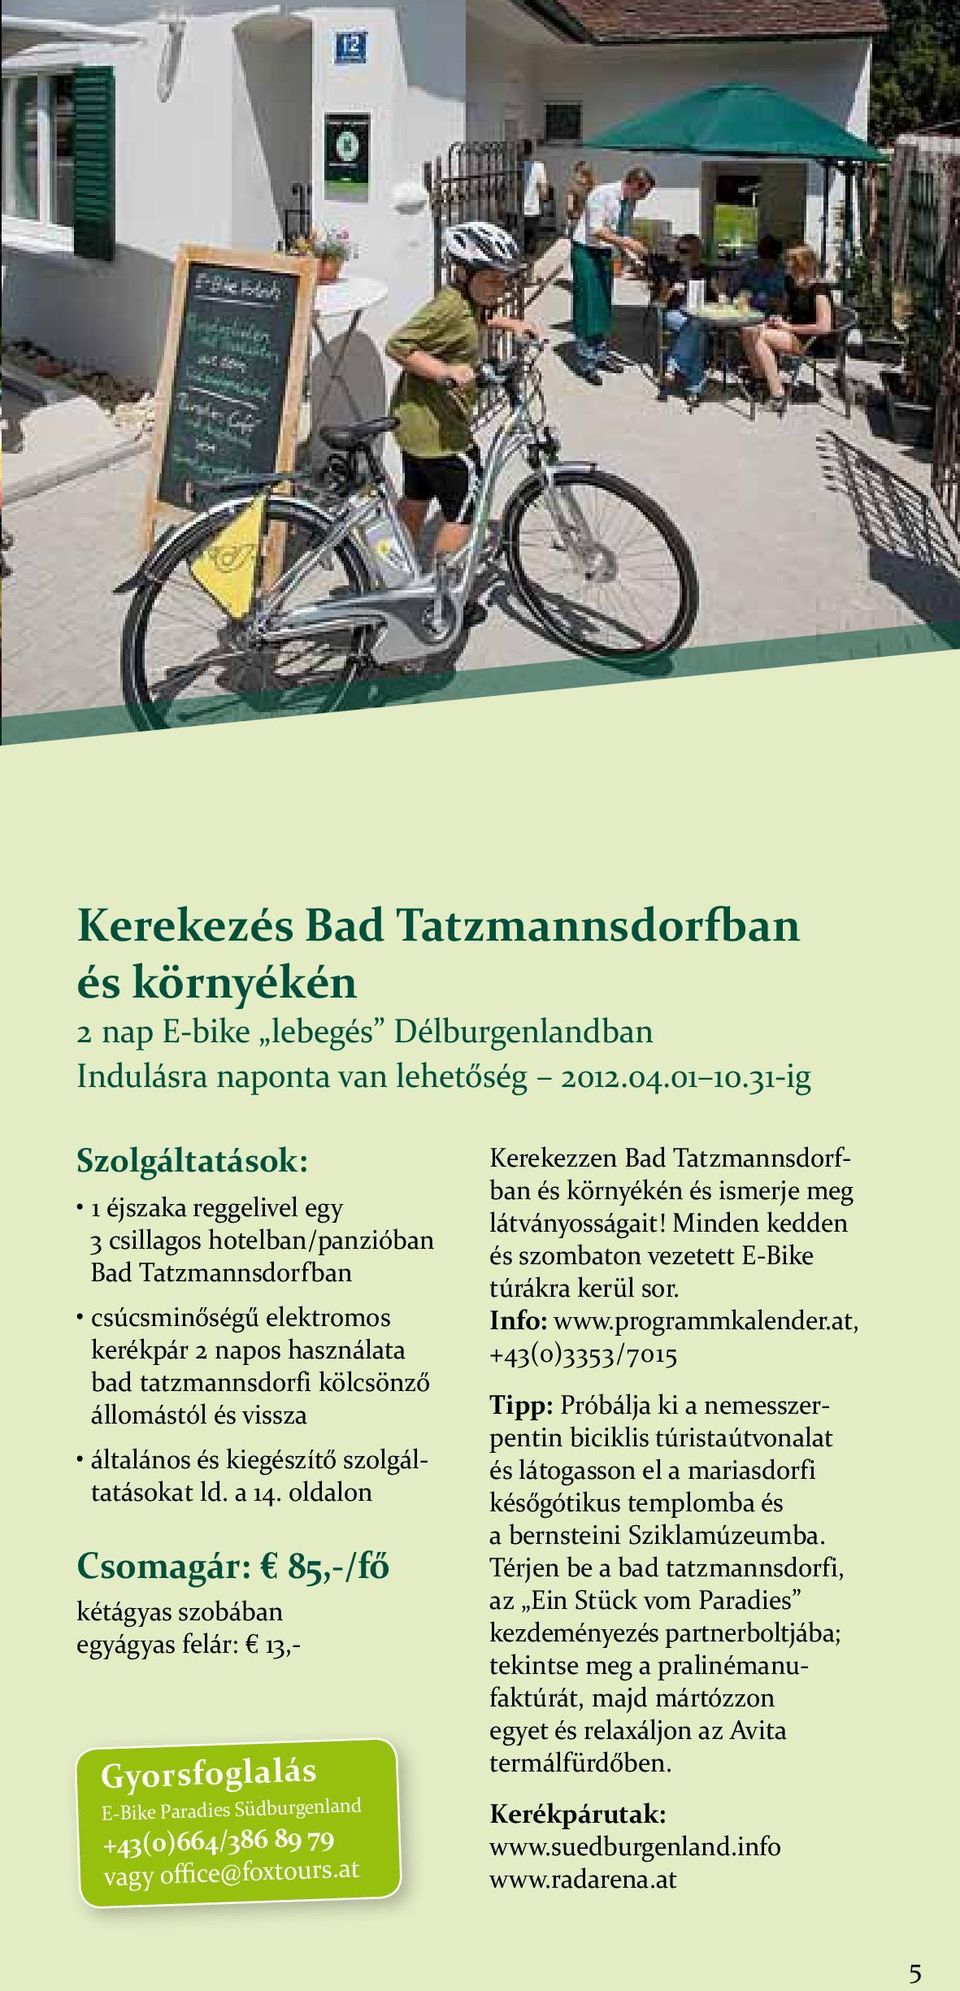 Gyorsfoglalás E-Bike Paradies Südburgenland +43(0)664/386 89 79 vagy office@foxtours.at Kerekezzen Bad Tatzmannsdorfban és környékén és ismerje meg látványosságait!